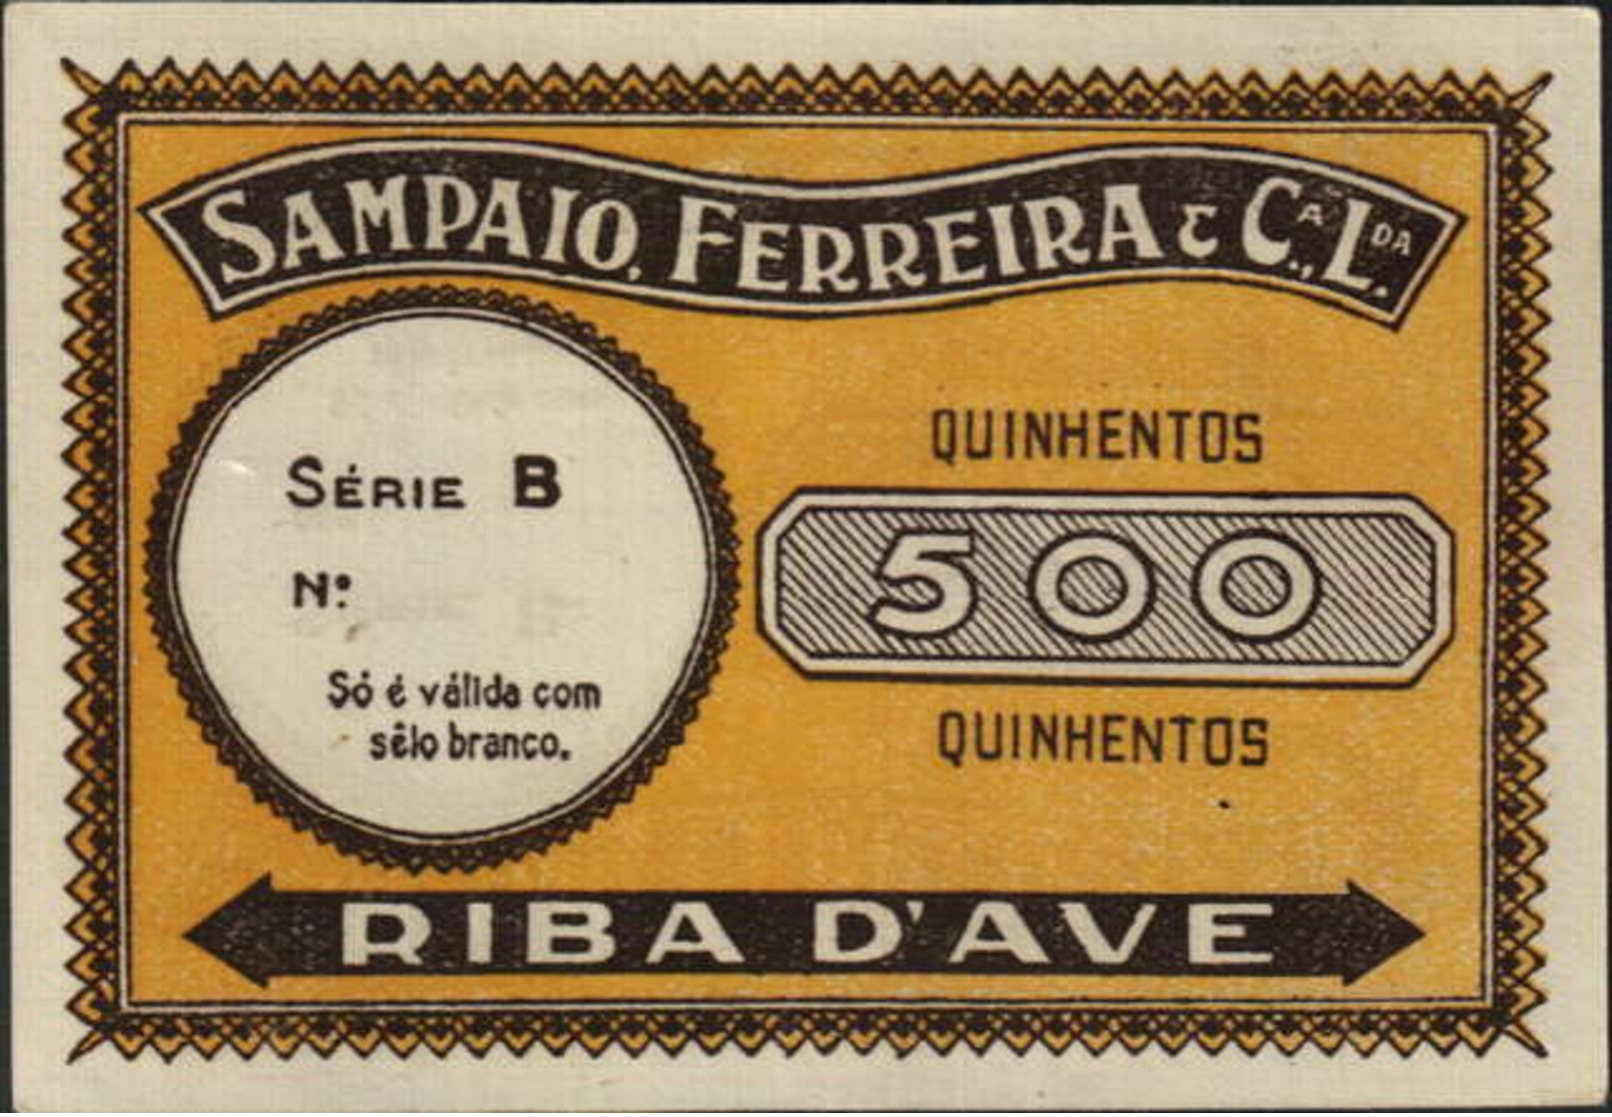 CÉDULA DE 500 -SÉRIE B -SAMPAIO FERREIRA & Cª.LDA.-RIBA D`AVE - Portugal